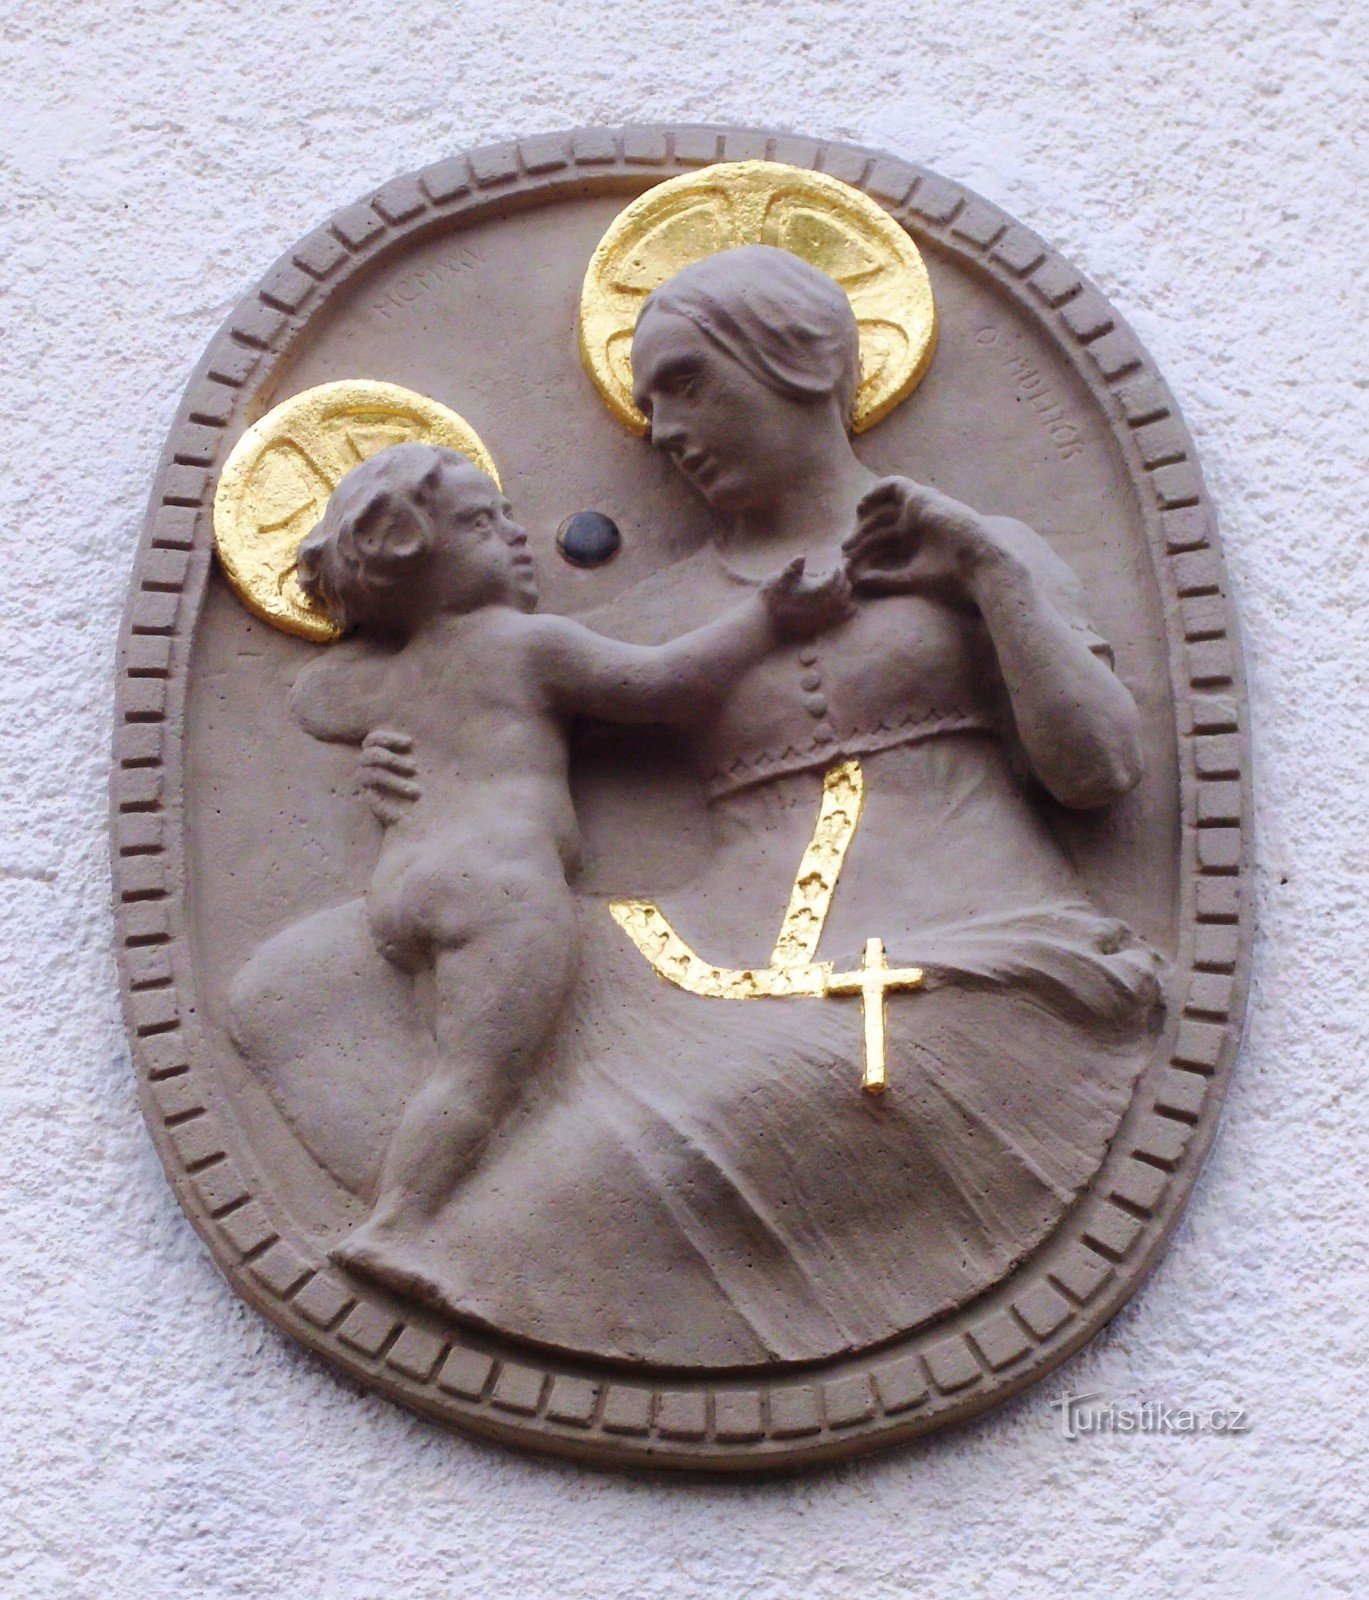 Vergine Maria sopra l'ingresso